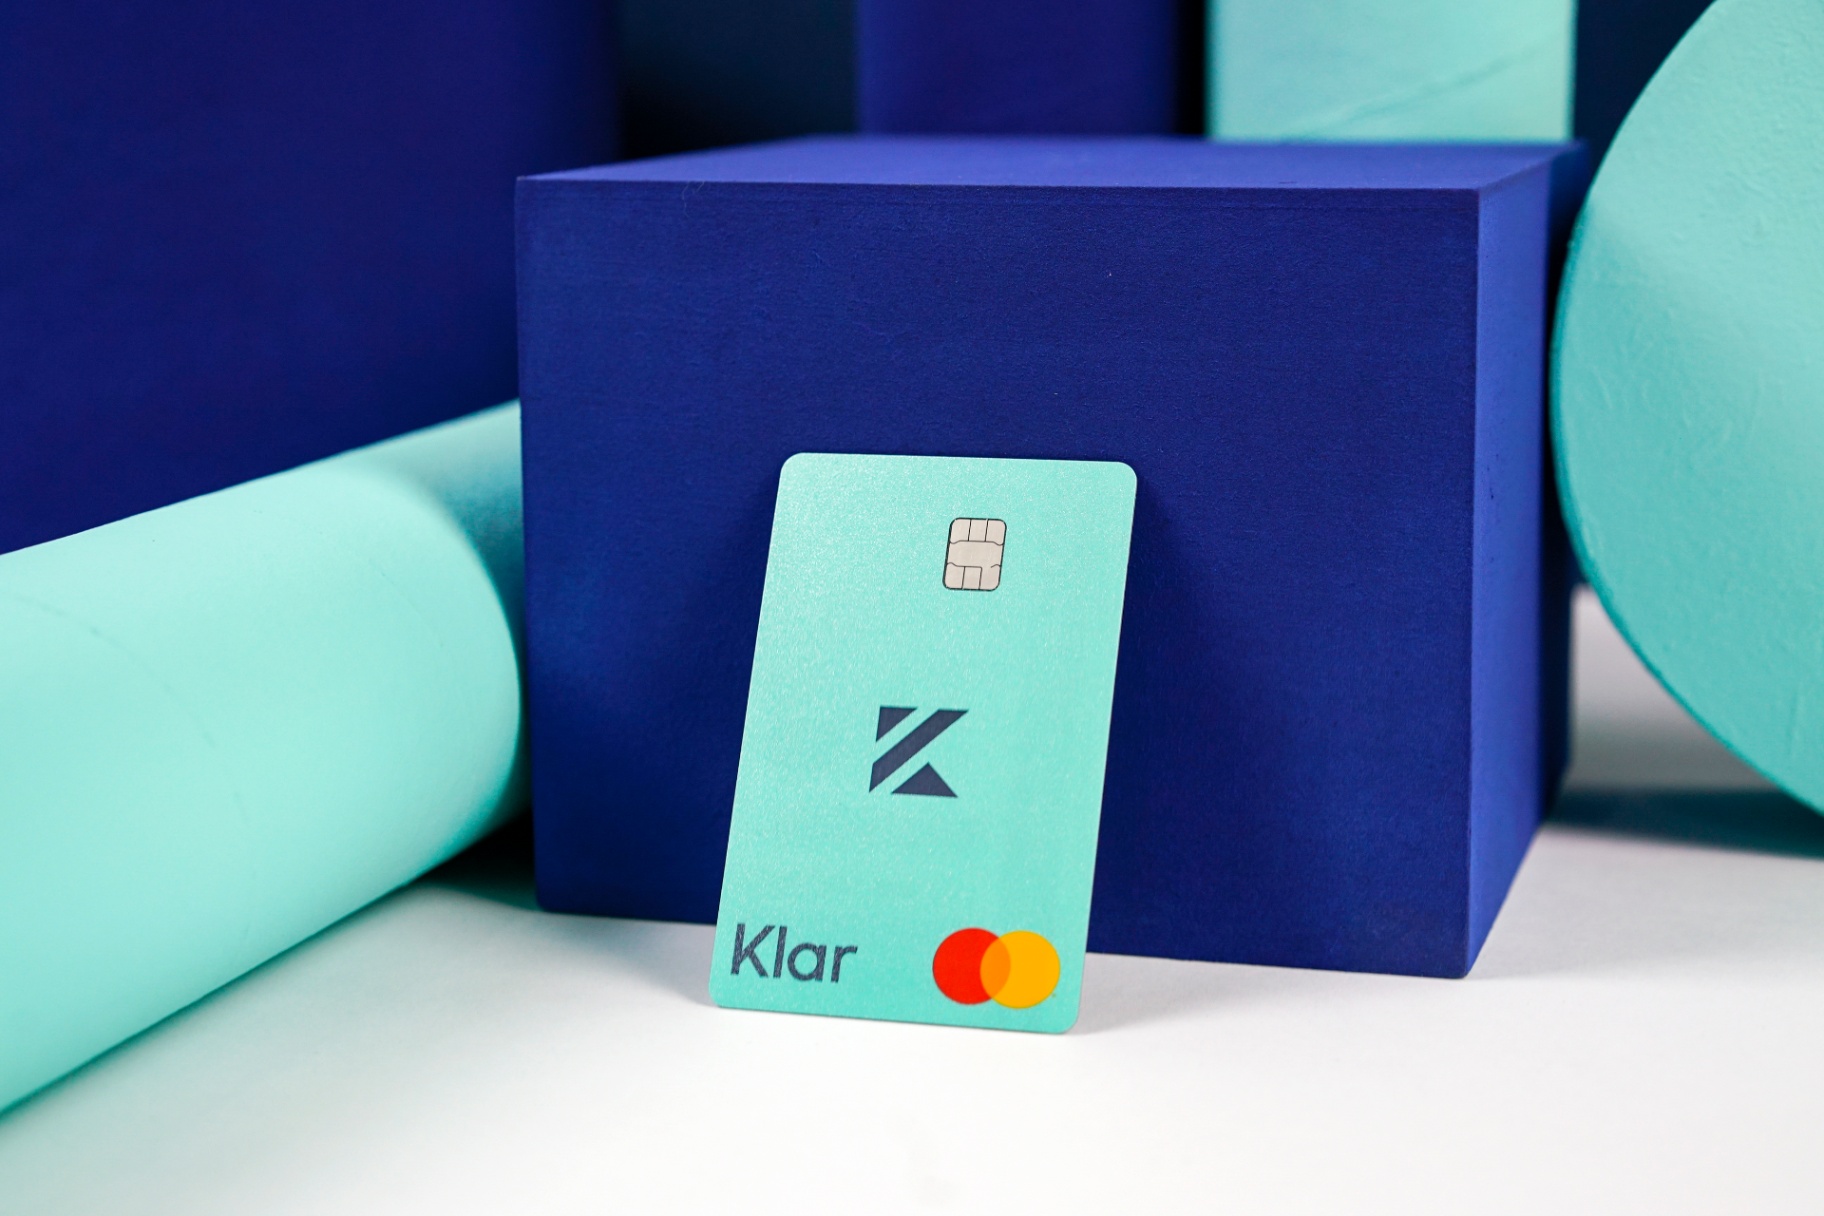 Descubra cómo obtener una tarjeta de crédito Klar sin tarifas anuales y otros beneficios